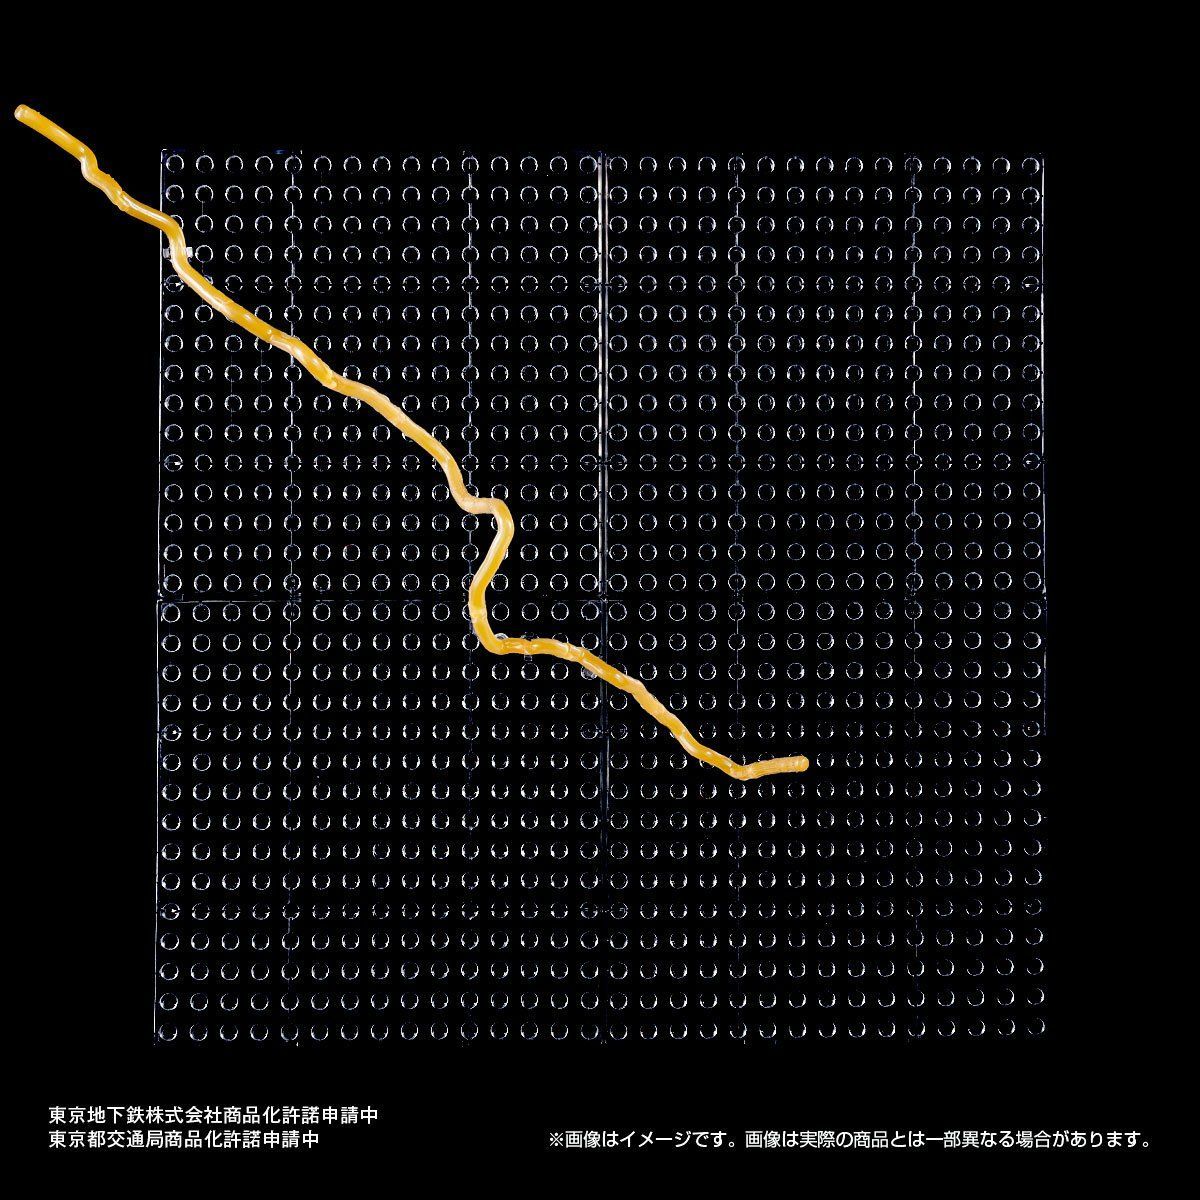 東京地下鉄立体路線図 フルコンプリートセット | フィギュア 